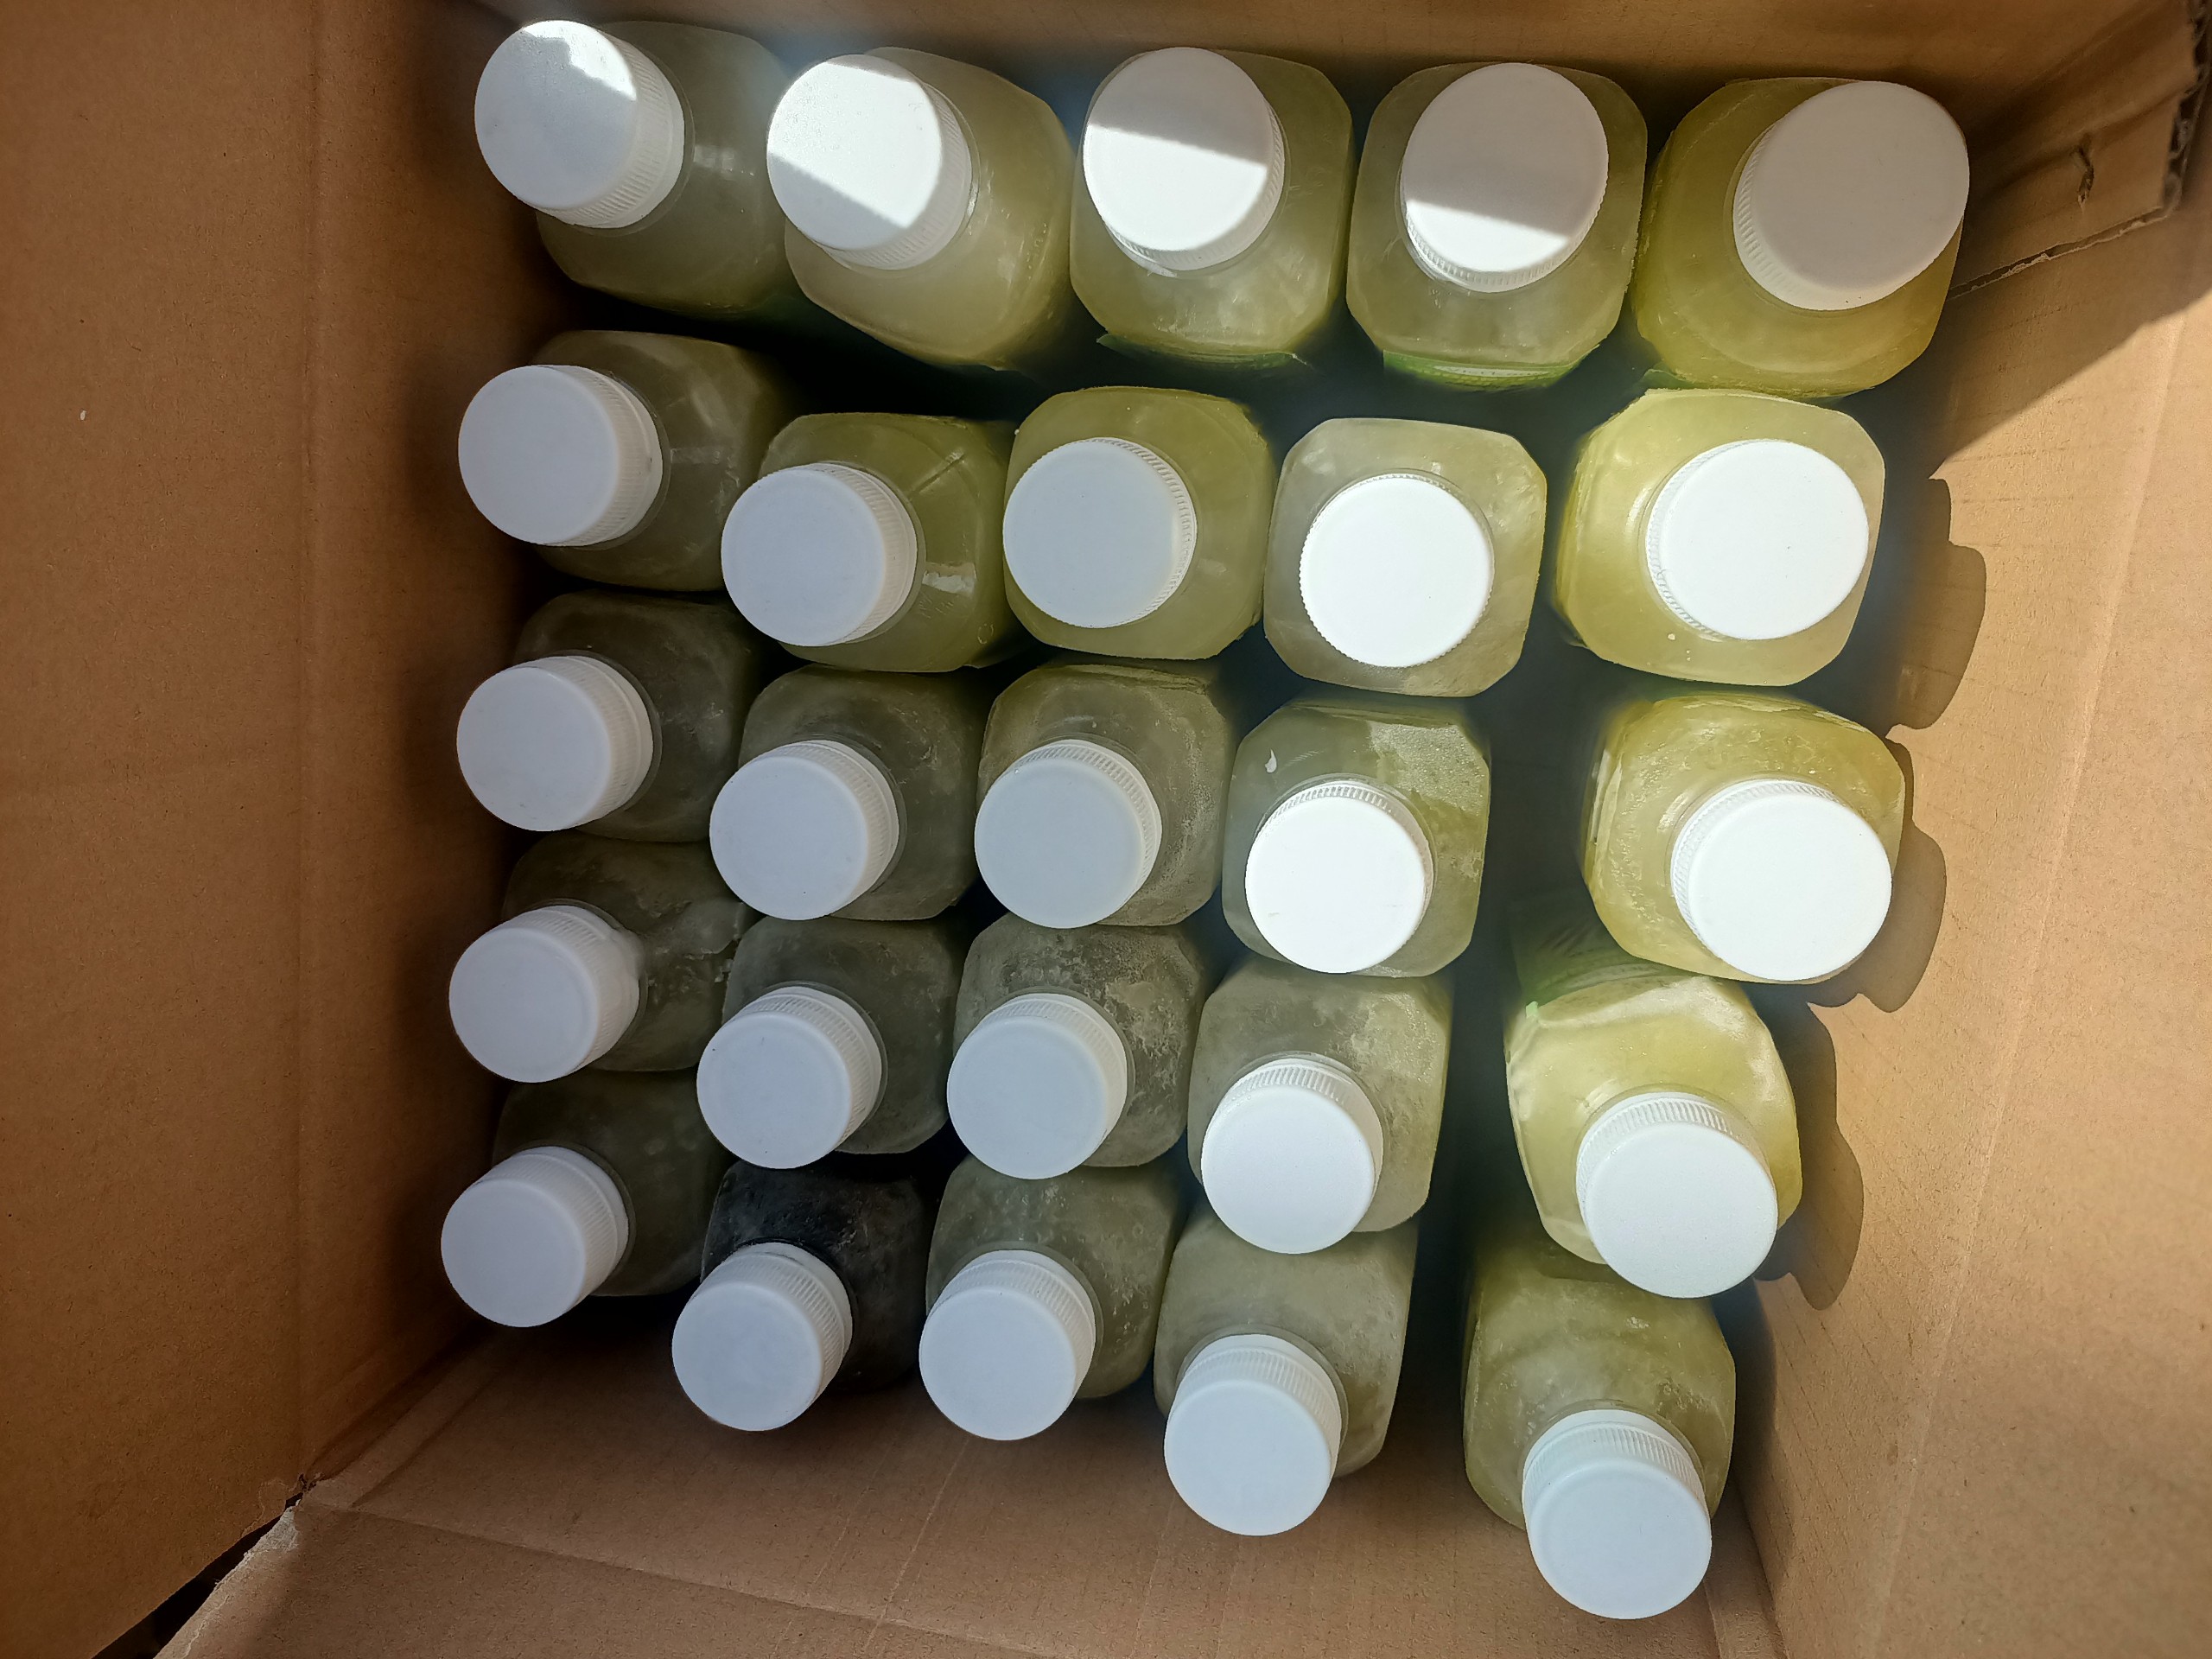 Frozen sugarcane juice is packed in PET bottles